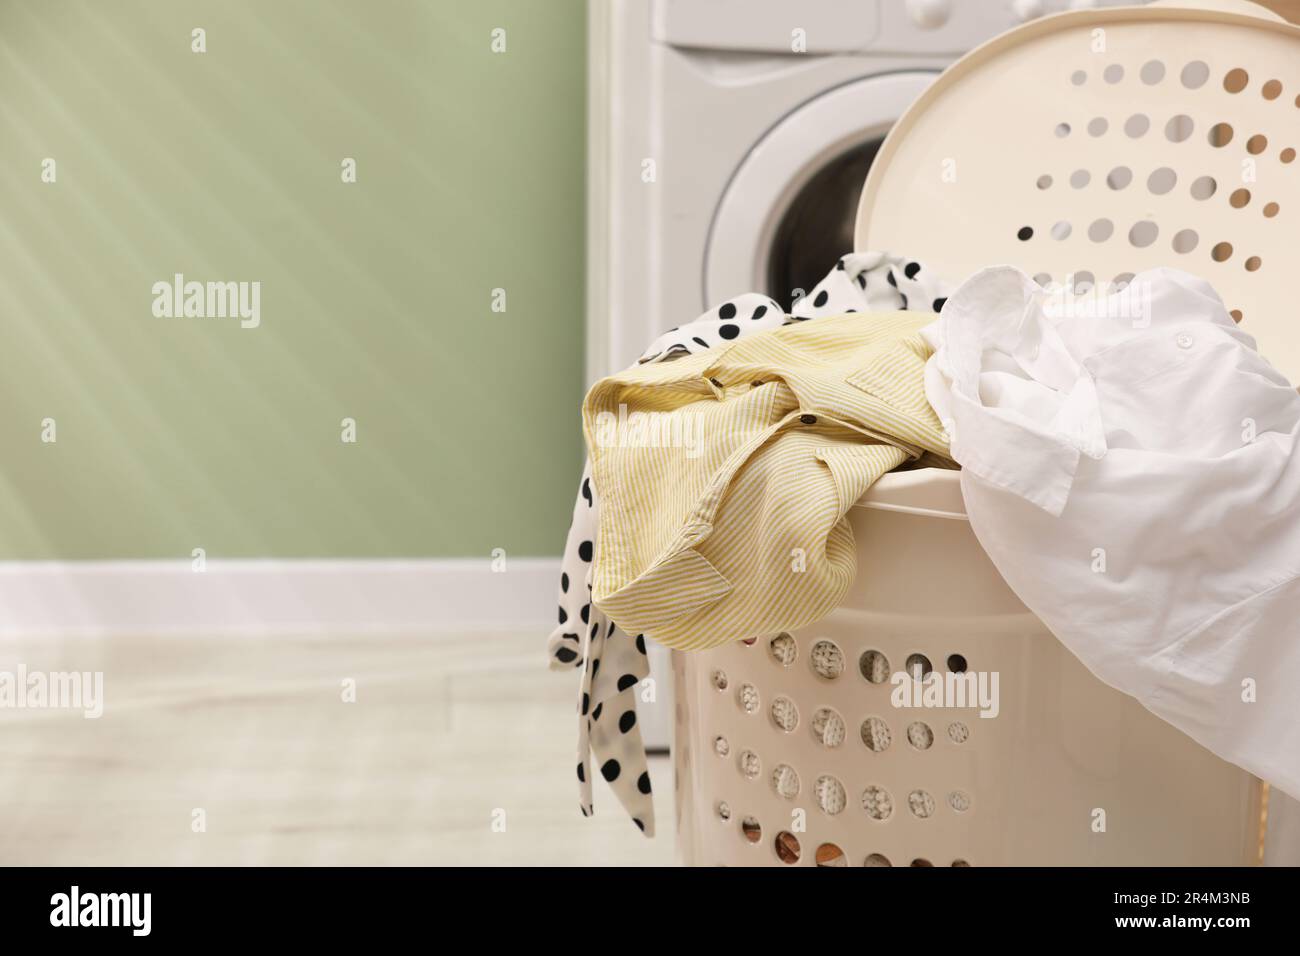 Cesta de lavandería con ropa limpia y colorida aislada en blanco Fotografía  de stock - Alamy